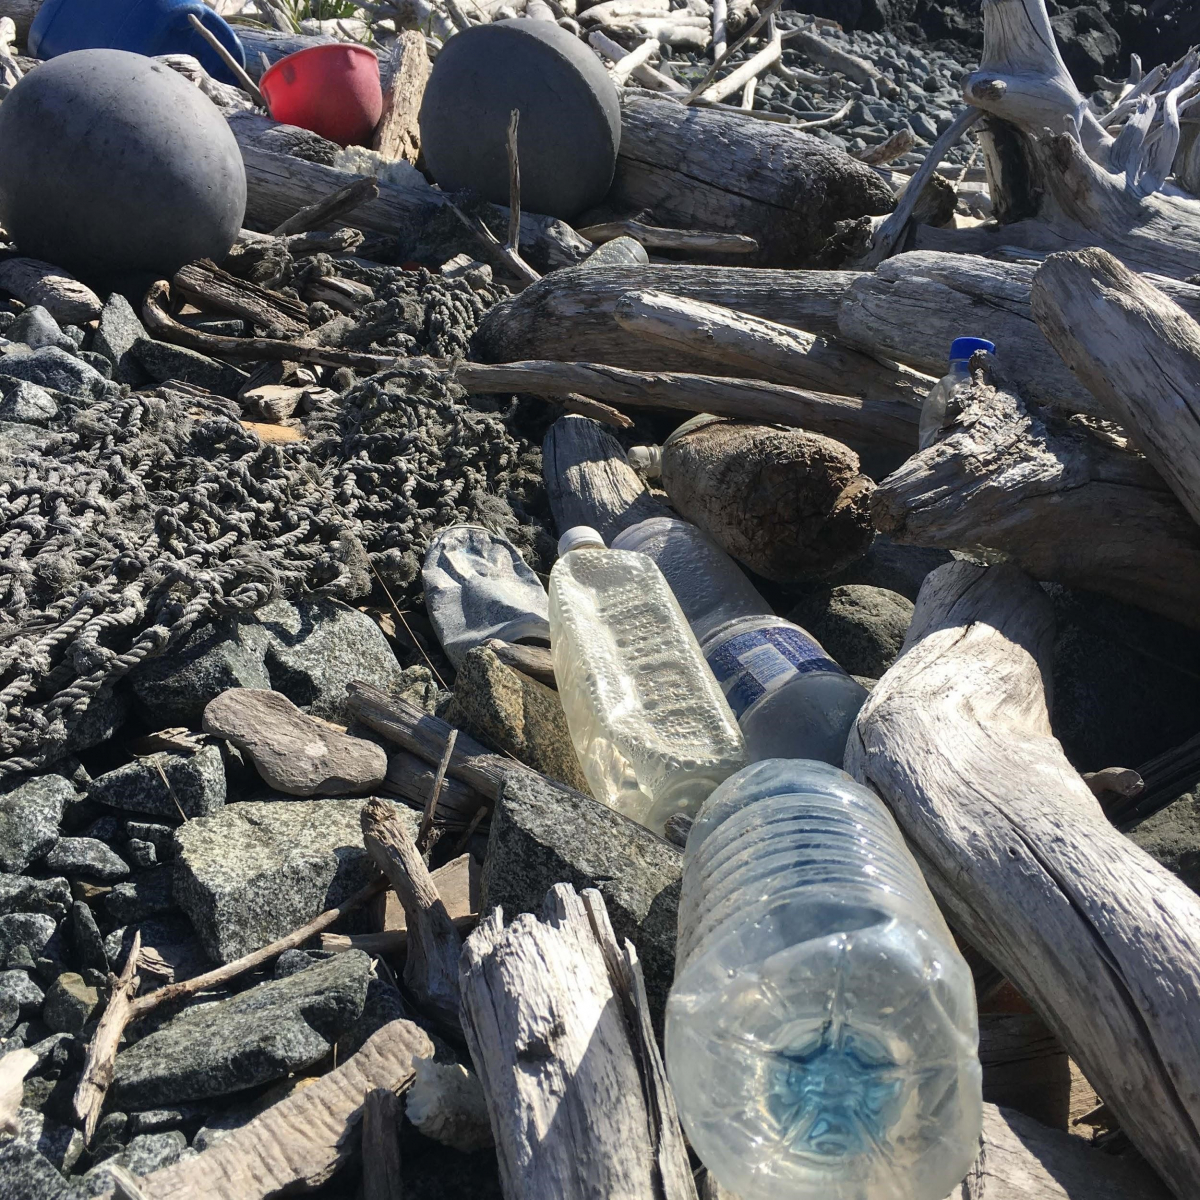 Tackling Marine Debris in 